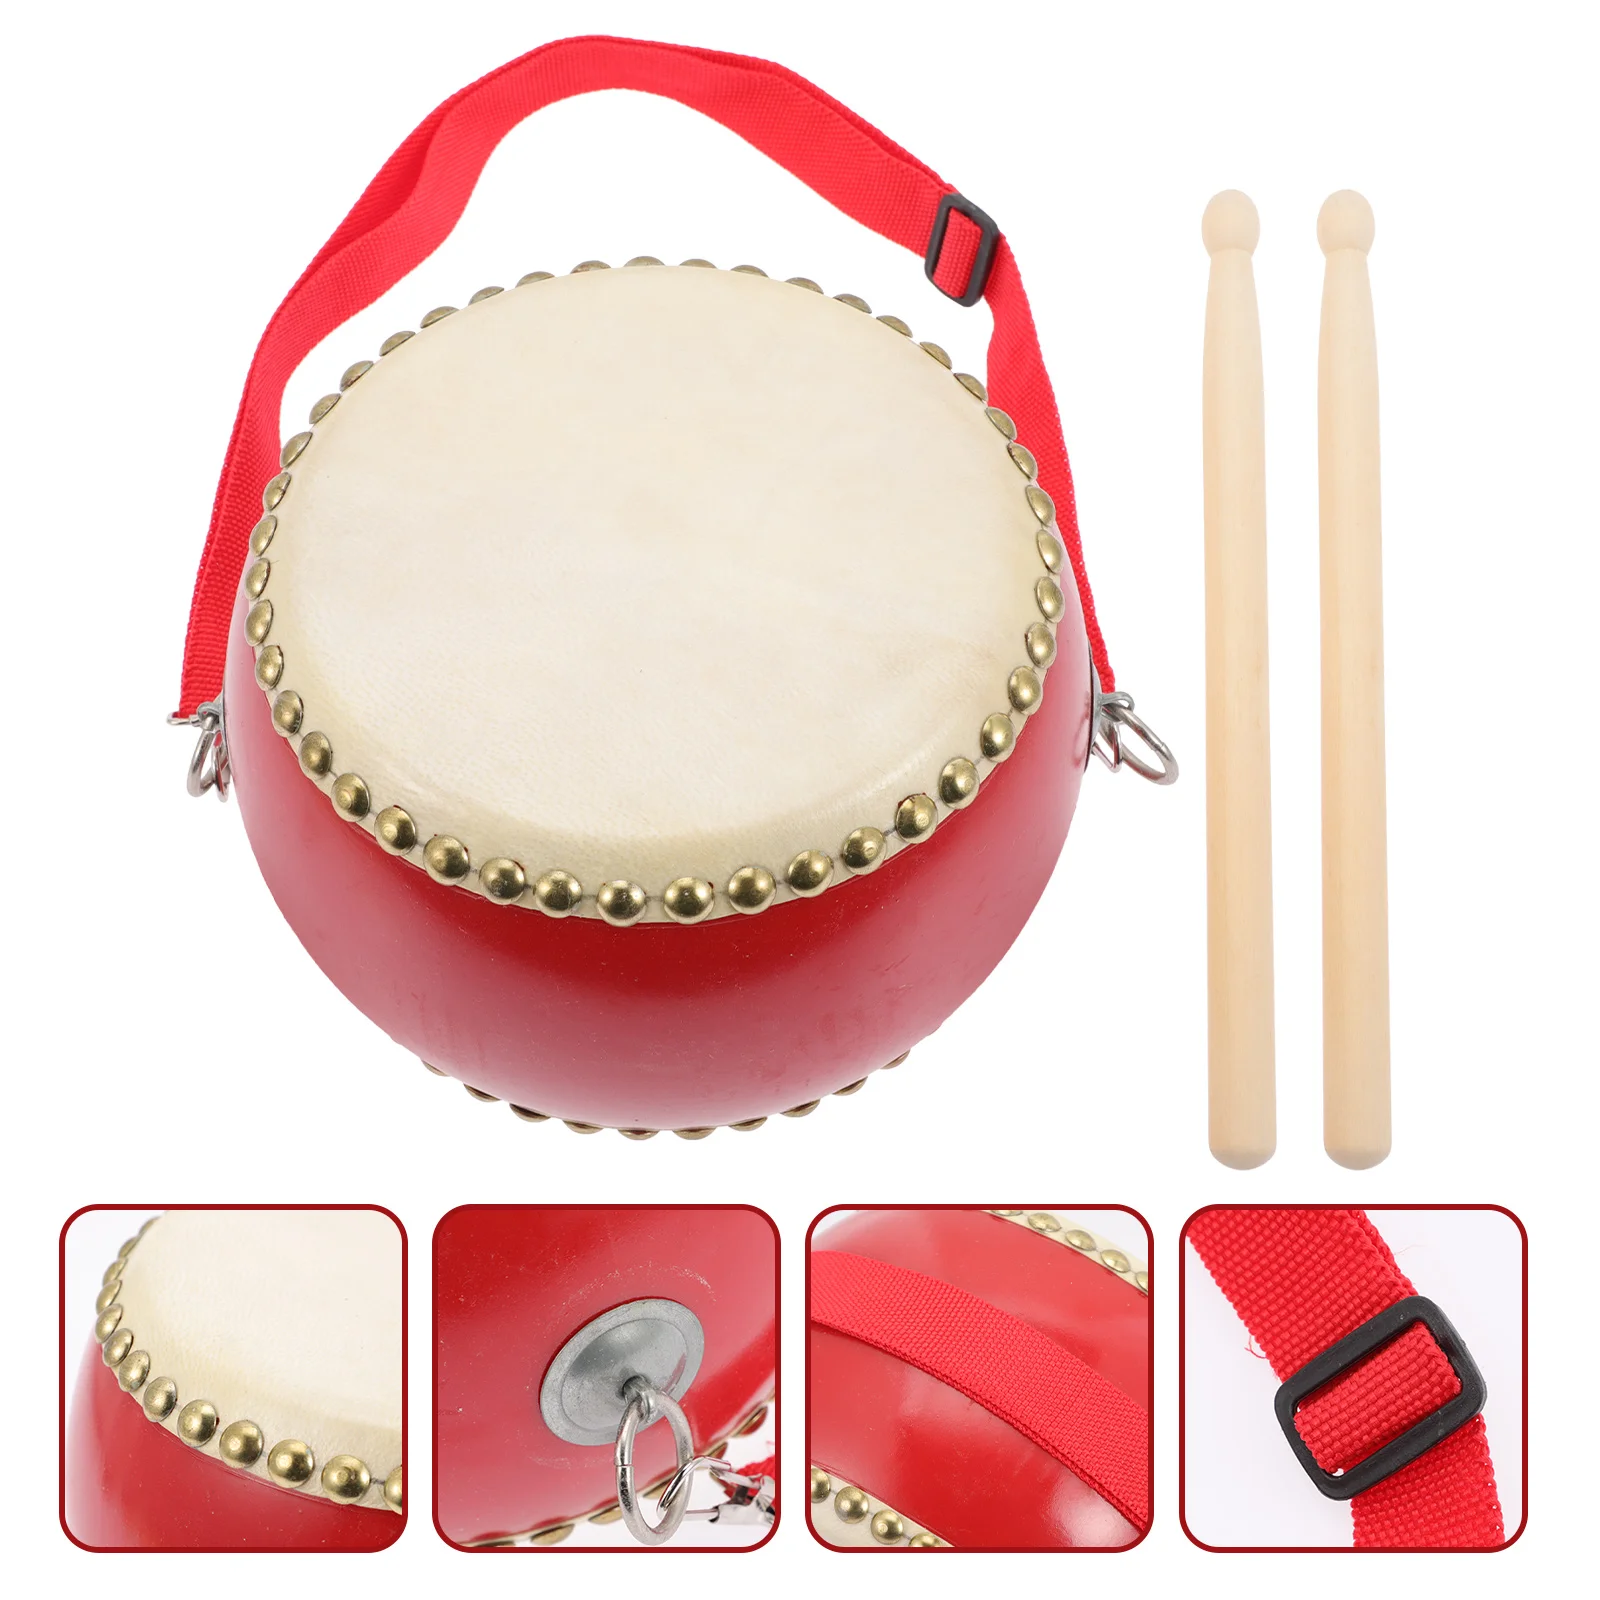 

Барабан детская музыкальная игрушка Талия деревянный обучающий перкуссионный инструмент из воловьей кожи для детей